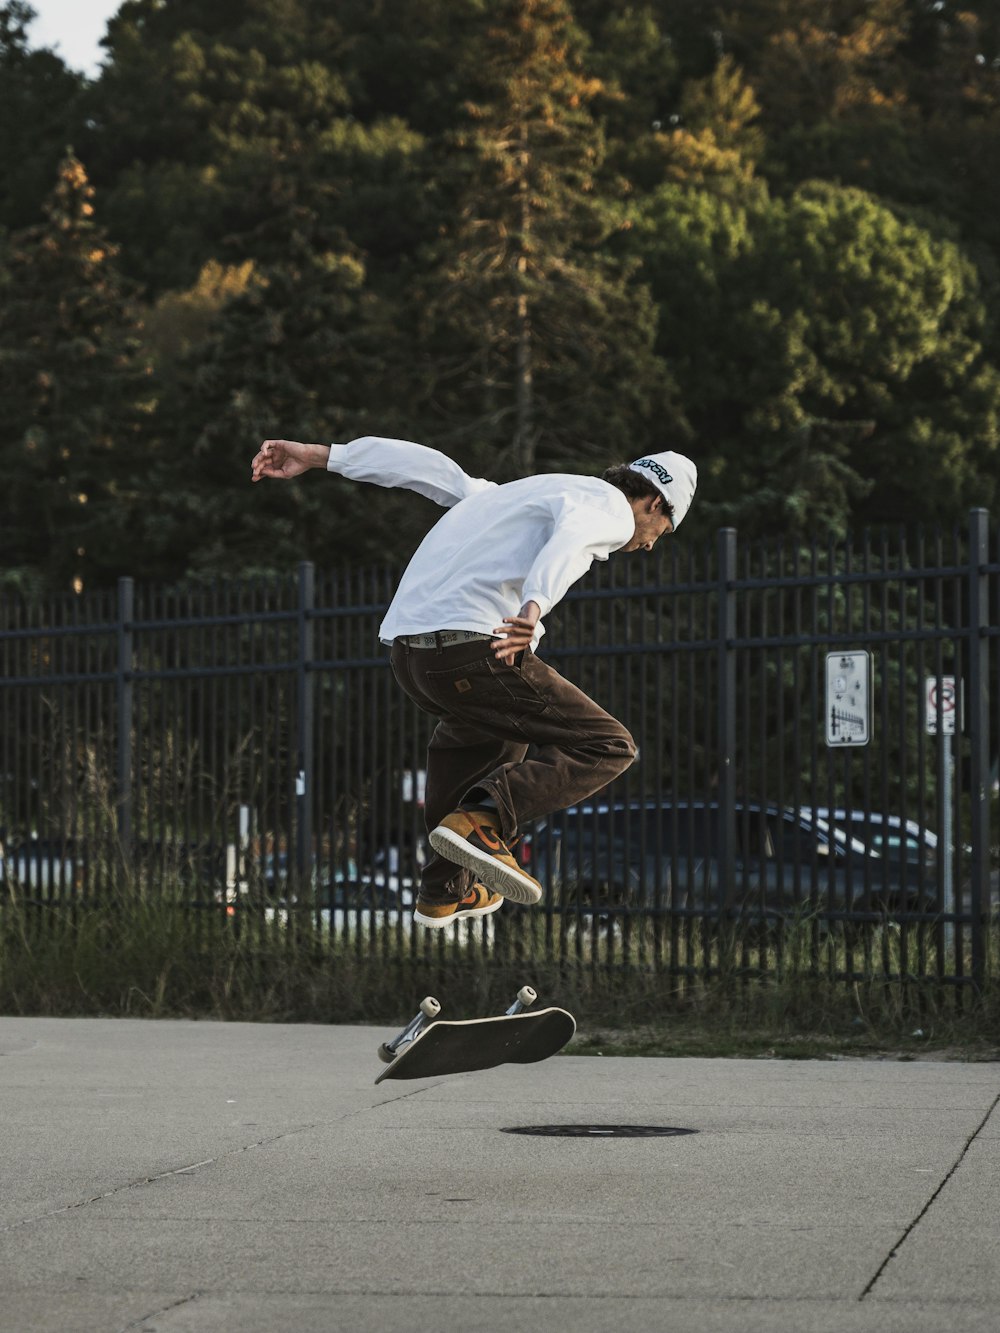 a man flying through the air while riding a skateboard